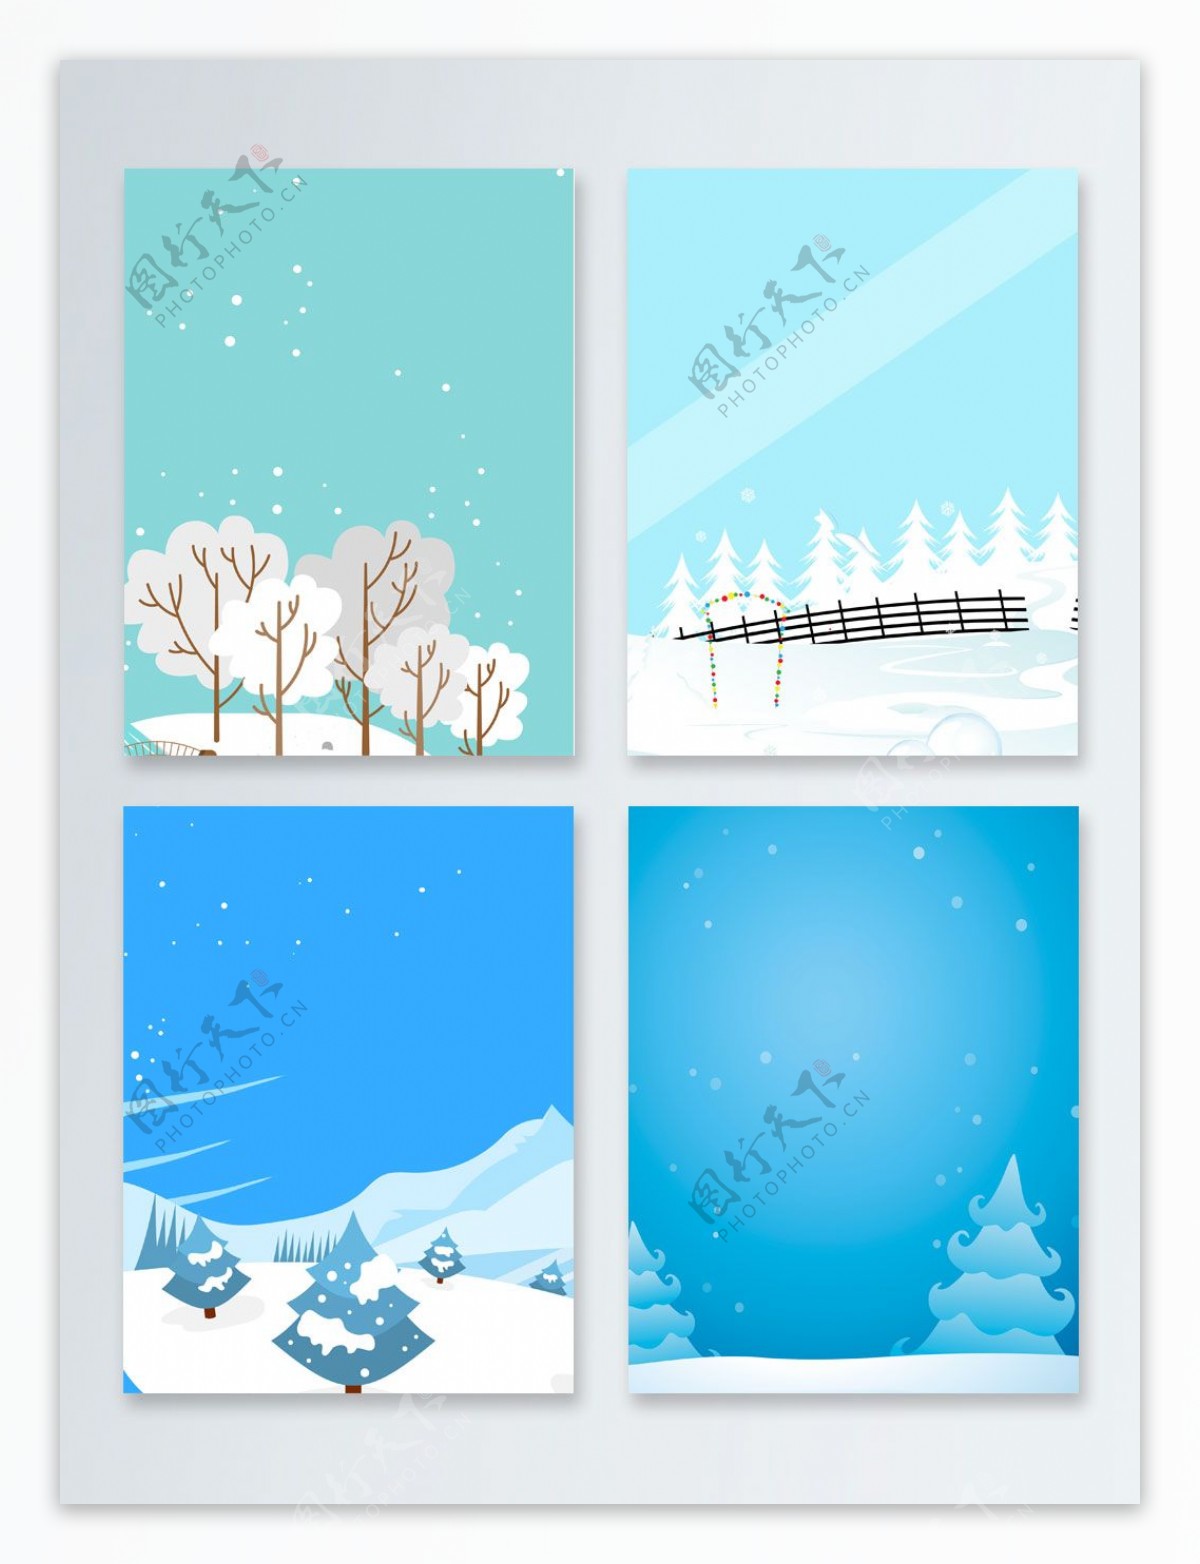 清新蓝色创意冬季促销广告雪景设计海报